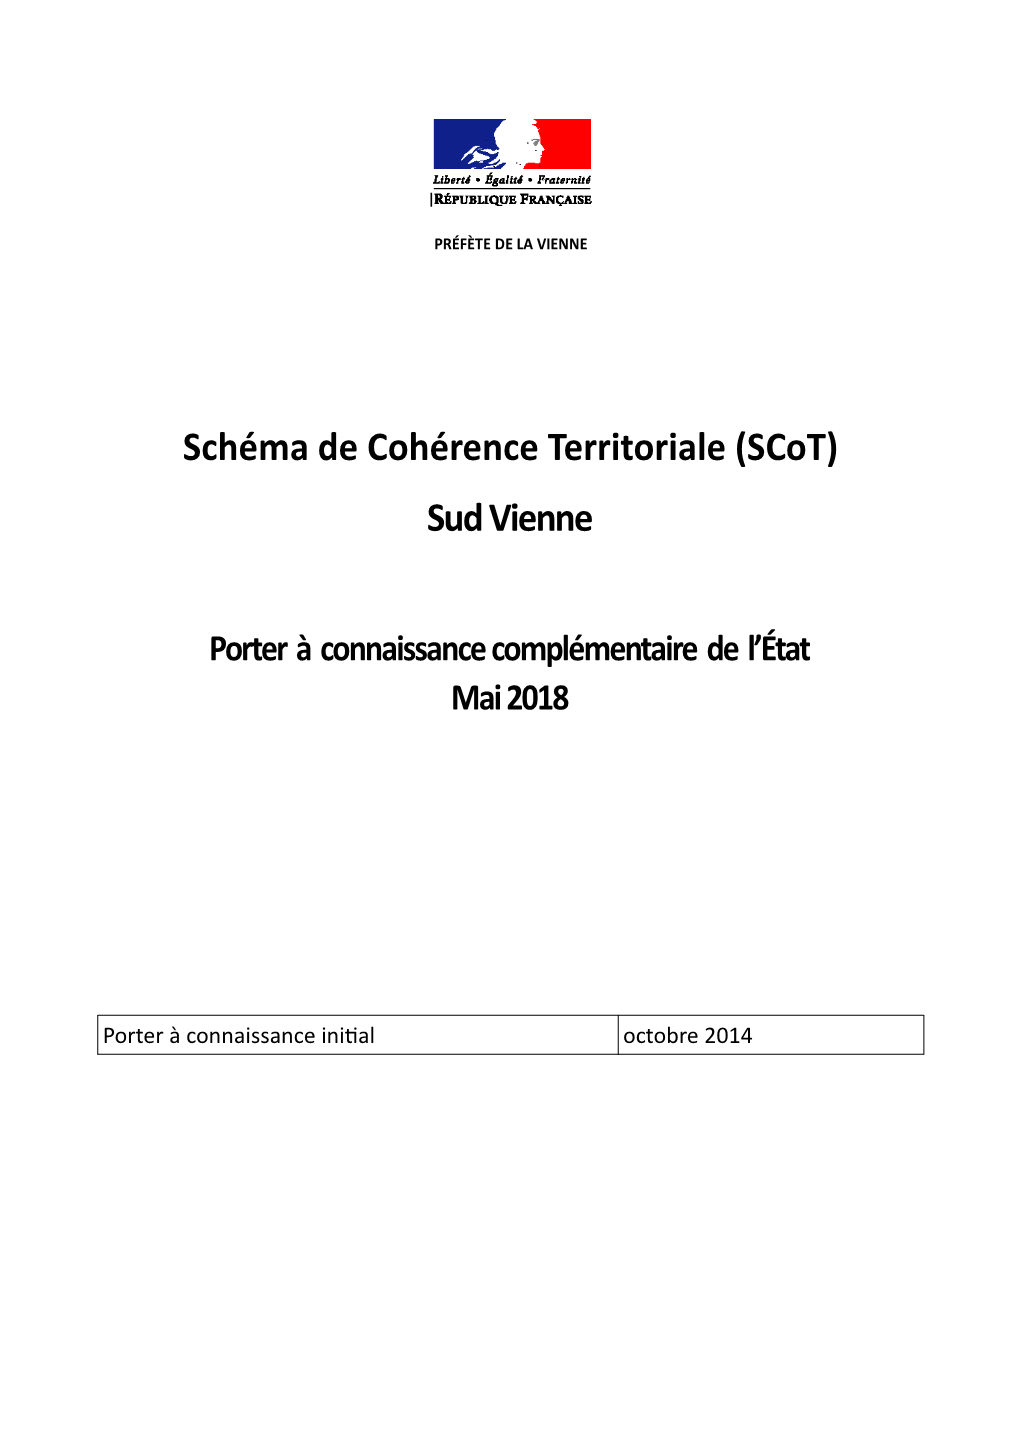 Schéma De Cohérence Territoriale (Scot) Sud Vienne